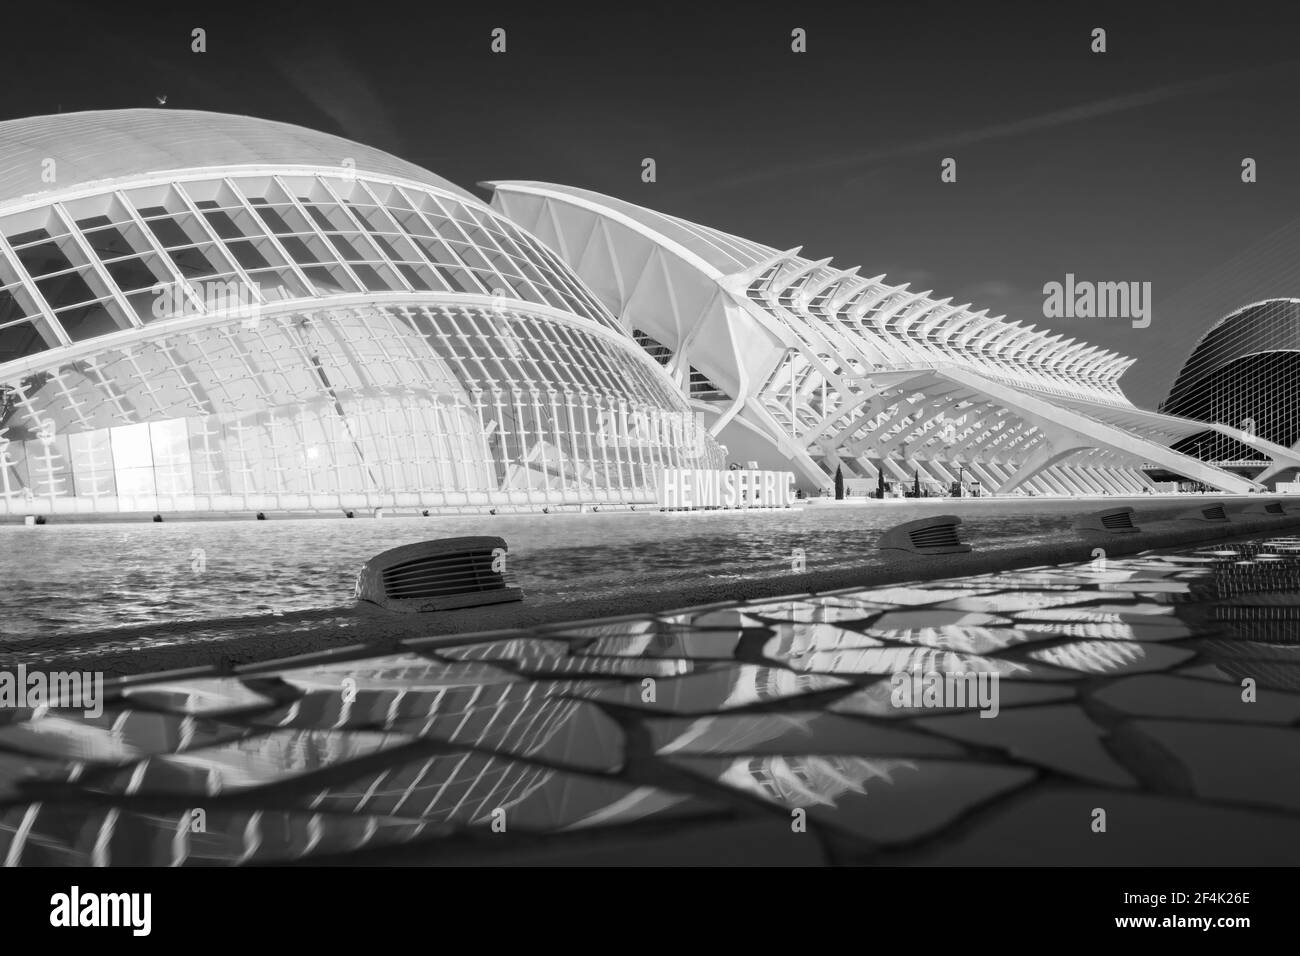 La Città delle Arti e delle Scienze di Valencia è il punto di riferimento moderno della città spagnola. È stato progettato dagli architetti Santiago Calatrava e Félix candela. Foto Stock